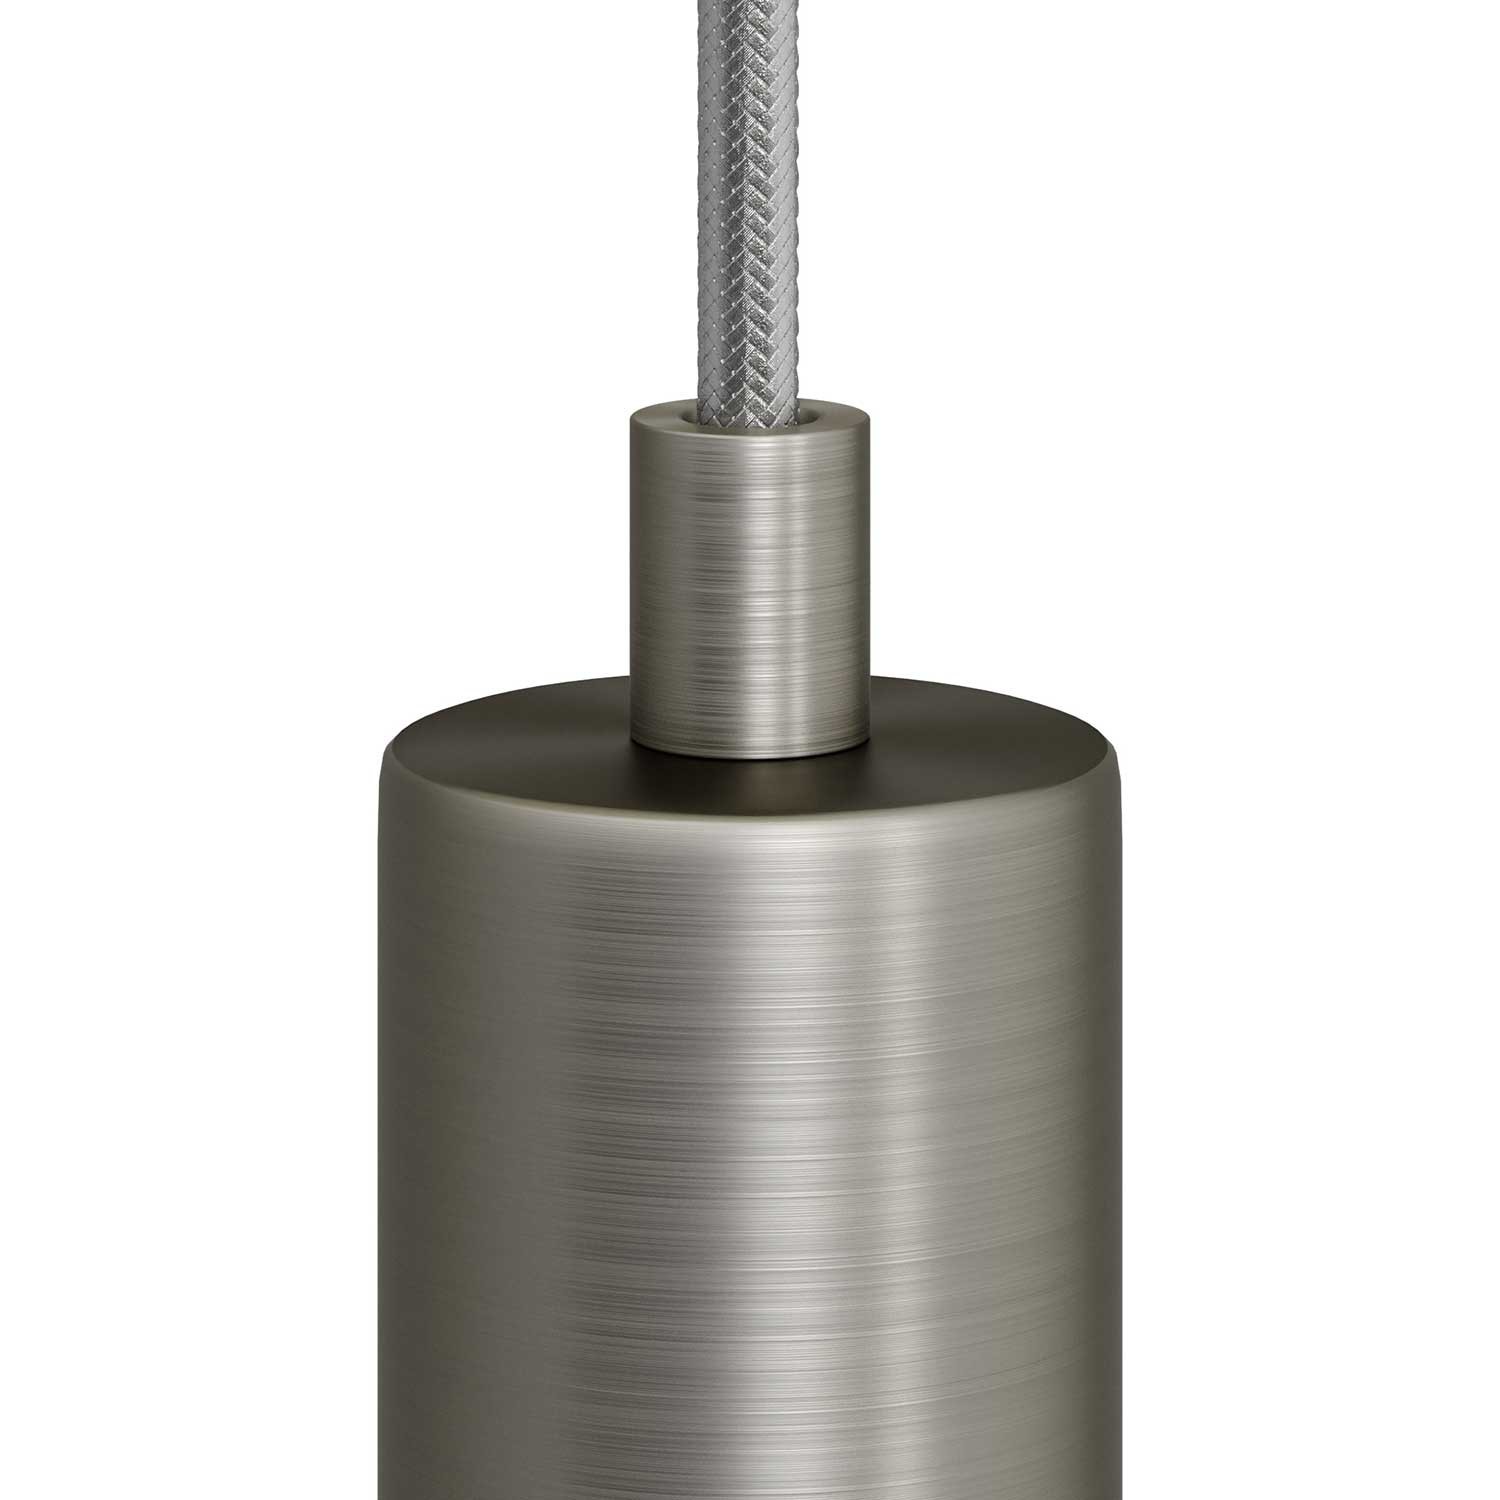 Valcová kovová káblová svorka so závitovou tyčkou, maticou a podložkou -2 pieces